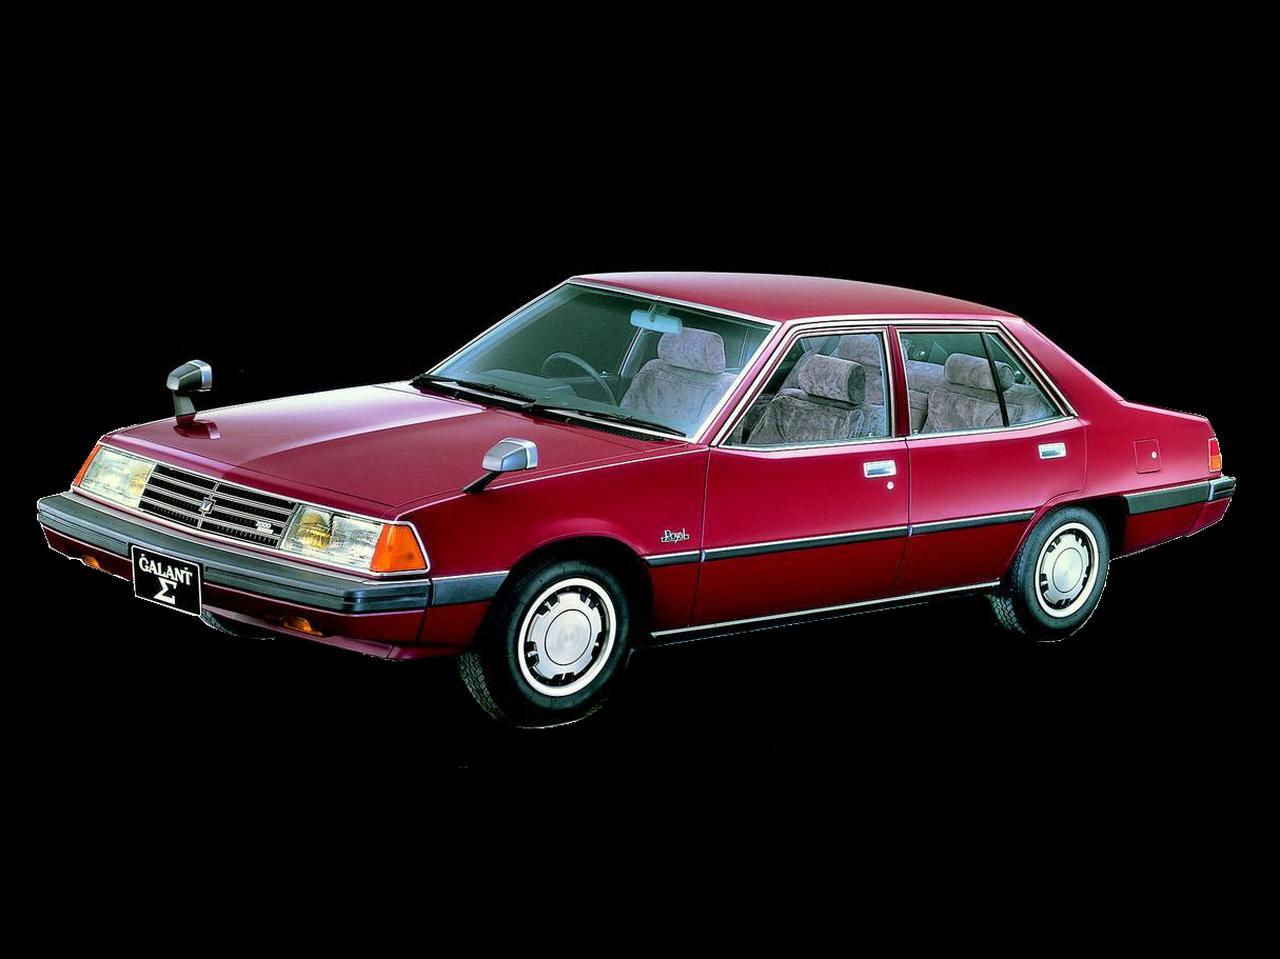 今日は何の日 4代目ギャラン S L 2代目エテルナs L発表 名優 高倉 健さんのcmも話題に 39年前 1980年4月24日 Webモーターマガジン 自動車情報サイト 新車 中古車 Carview